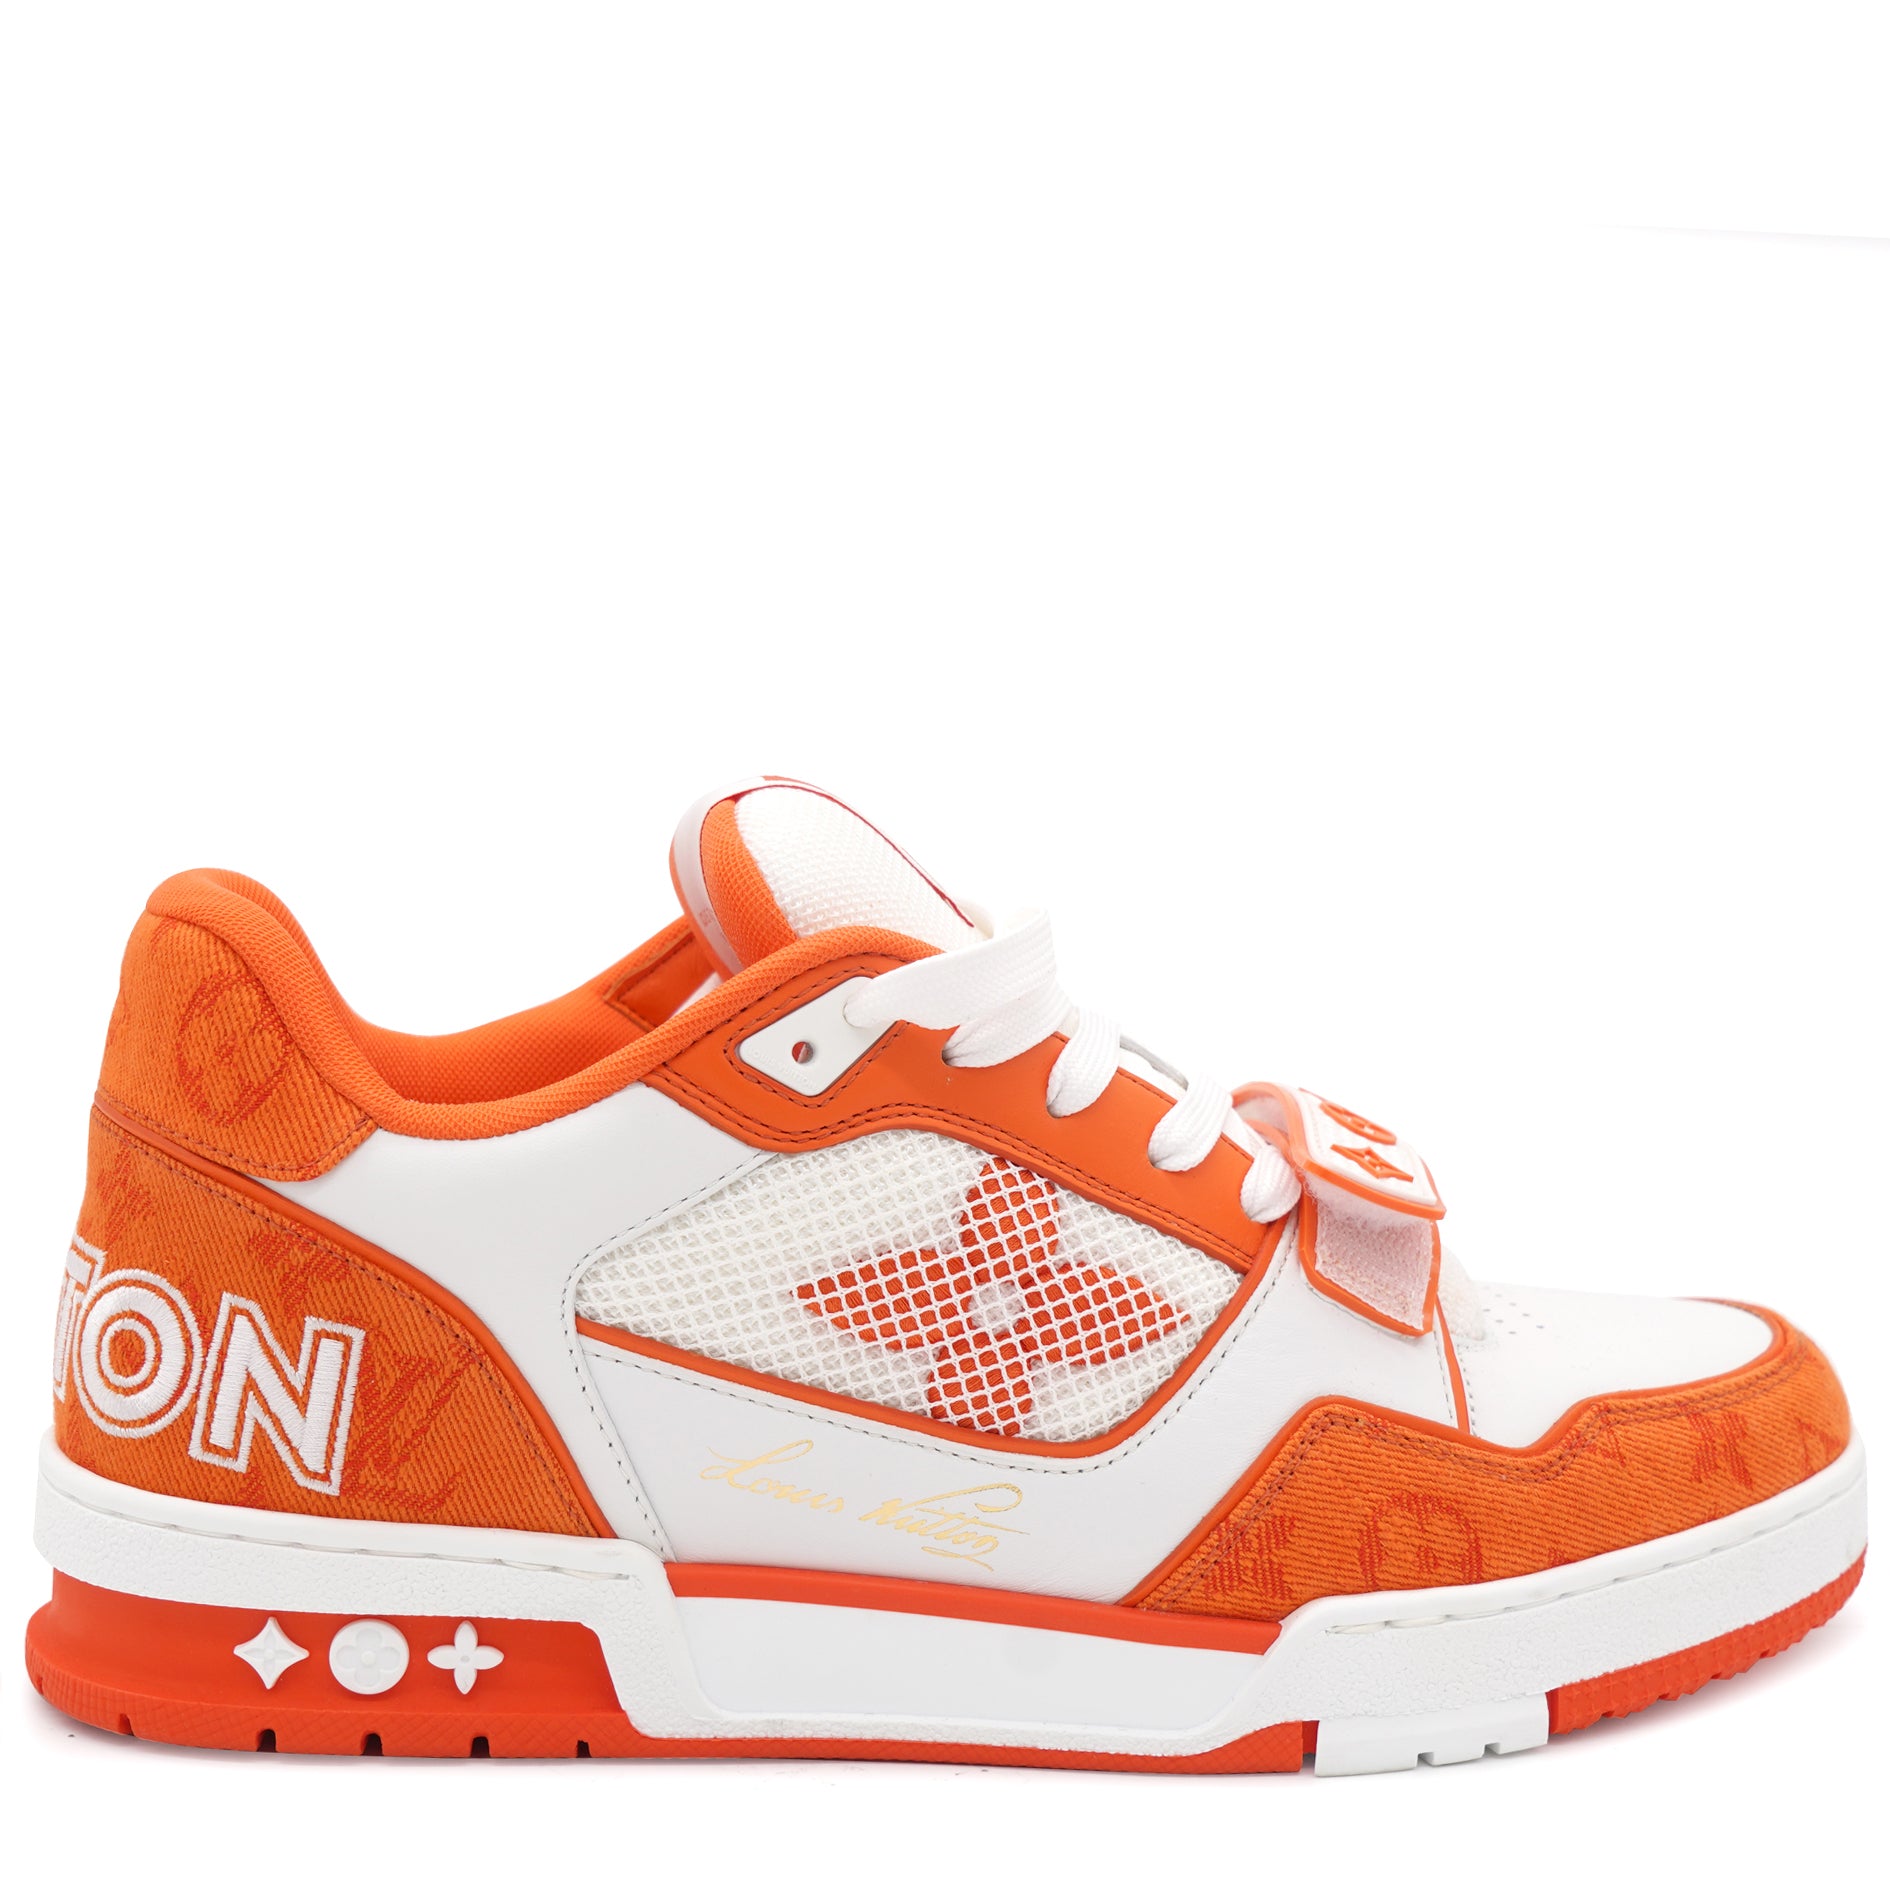 Louis Vuitton Lv trainer orange sneaker（unboxing➕review） 